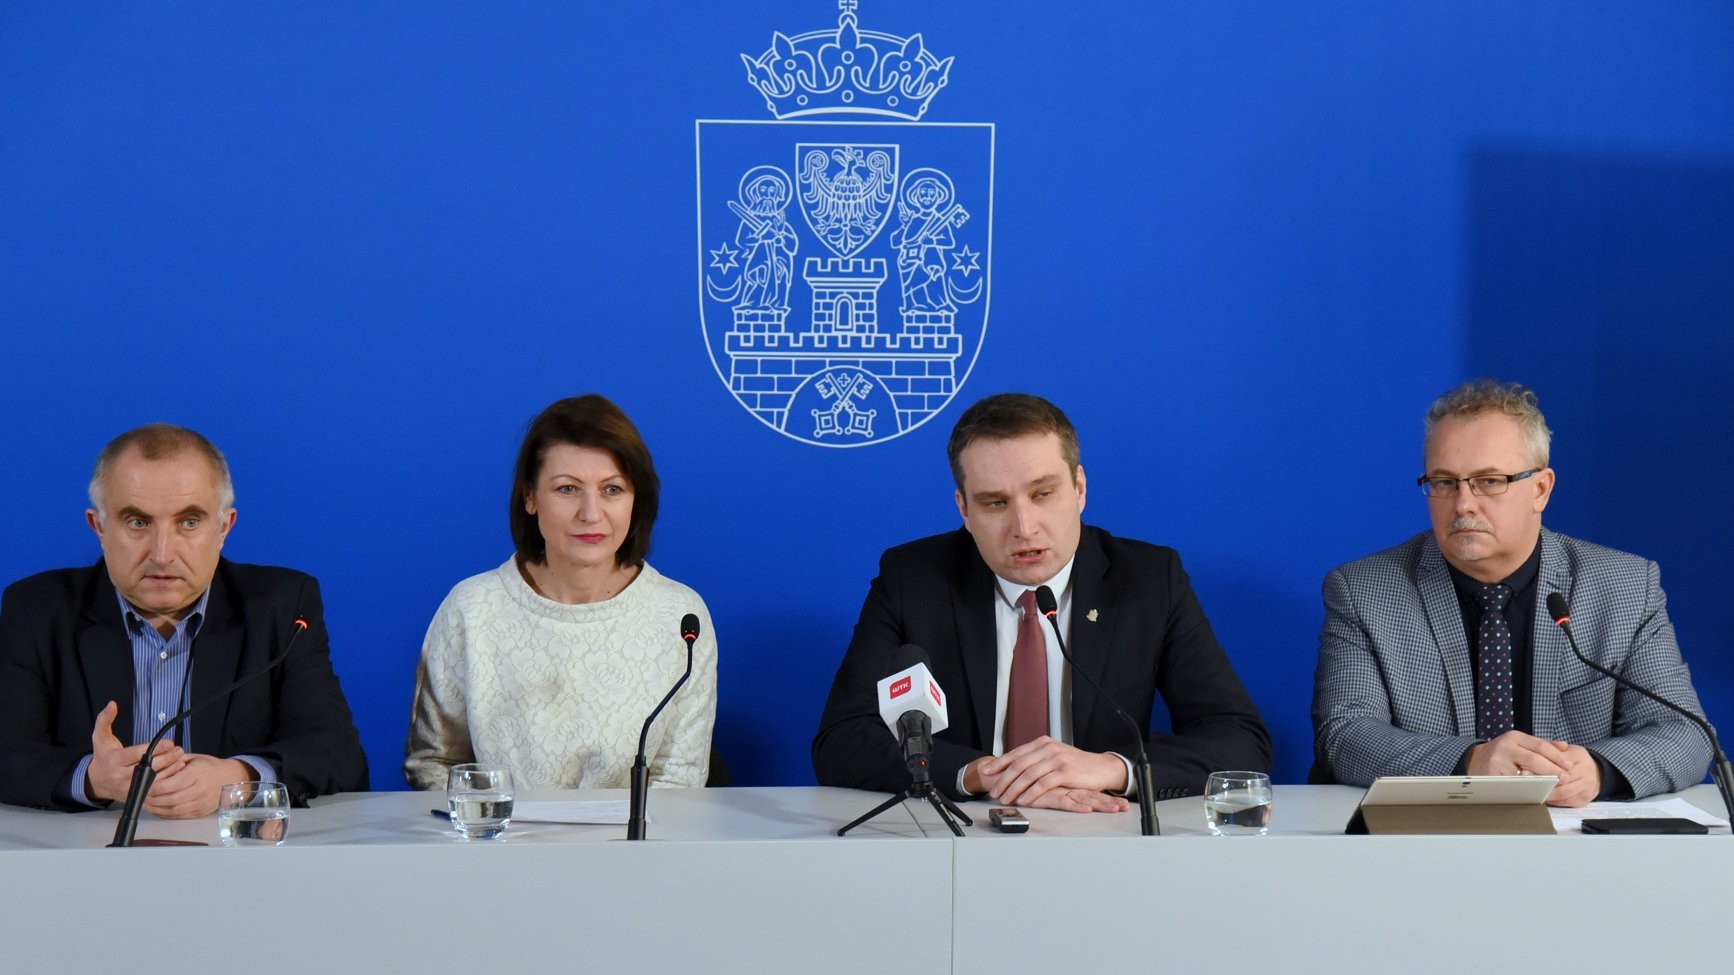 Zajęcia przeciwdziałające dyskryminacji i wykluczeniu będą prowadzone w poznańskich szkołach w ramach lekcji dodatkowych